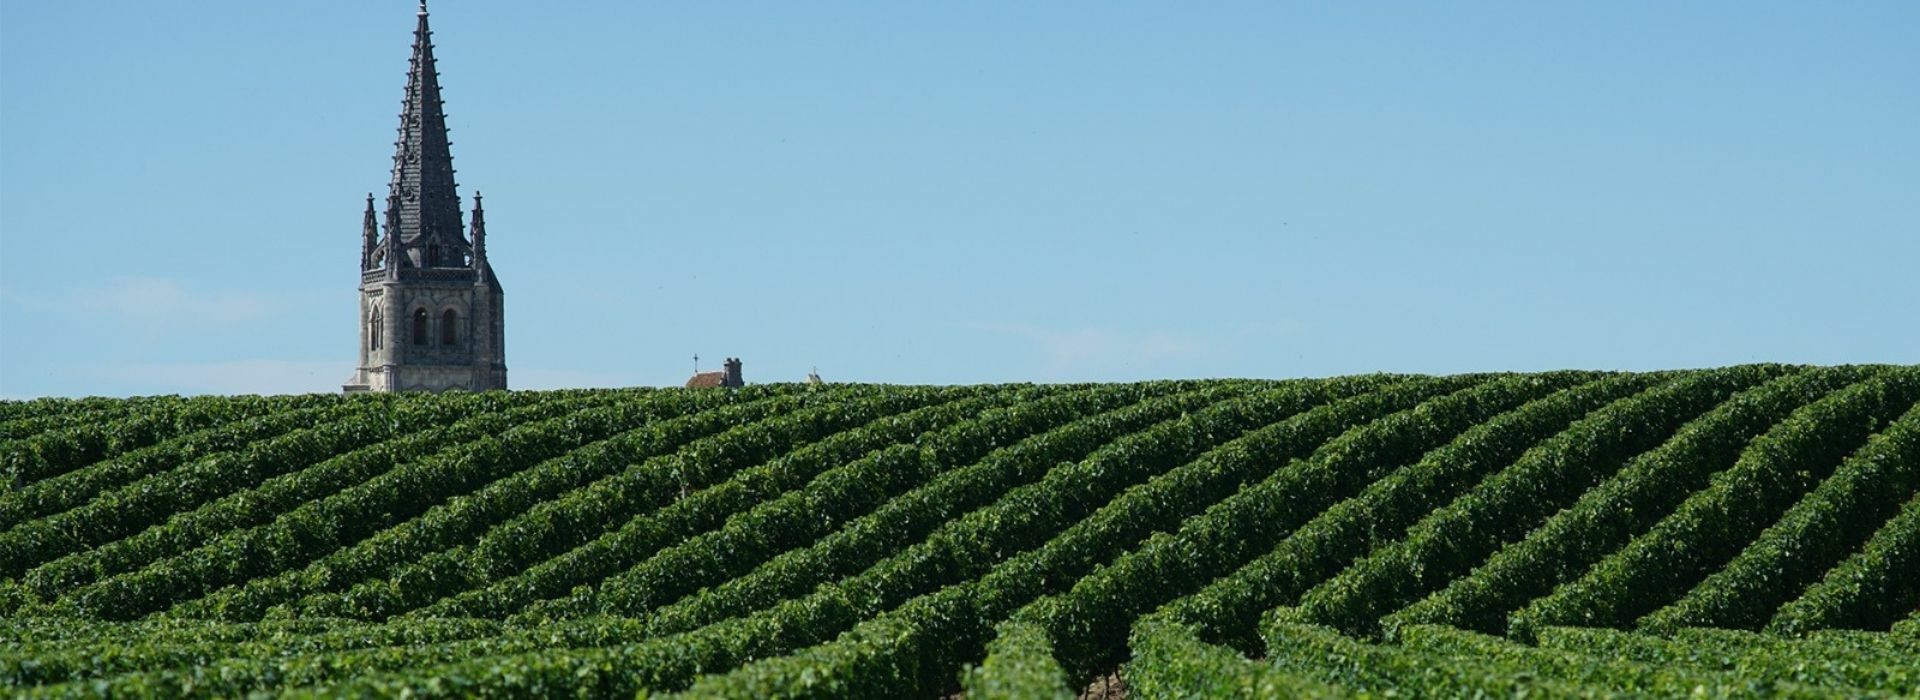 Bordeaux 2021 en primeur wine